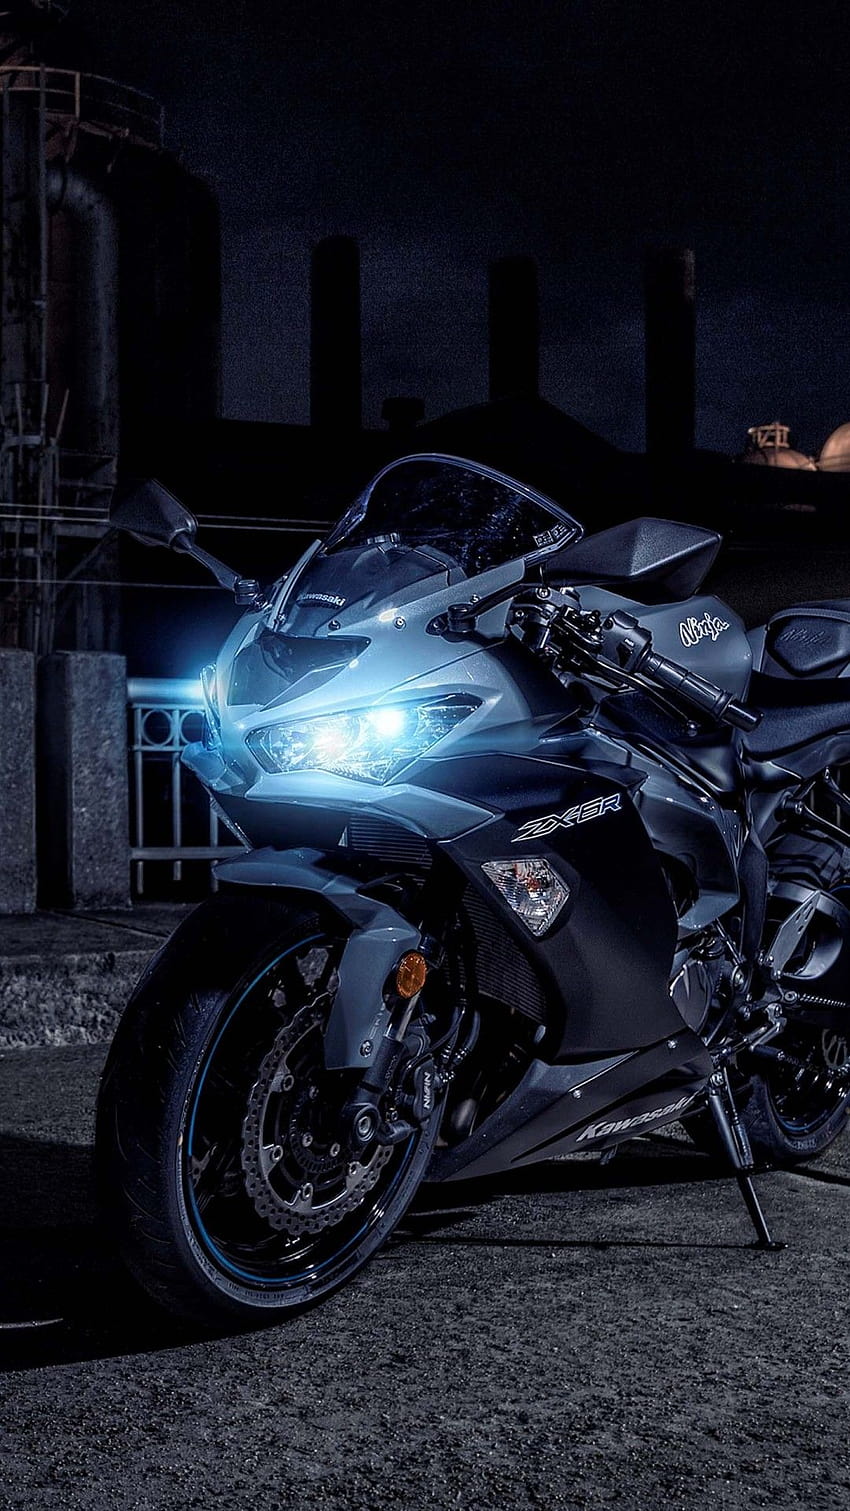 2019 Kawasaki Ninja ZX, bicicleta ninja teléfono Android completo fondo de pantalla del teléfono